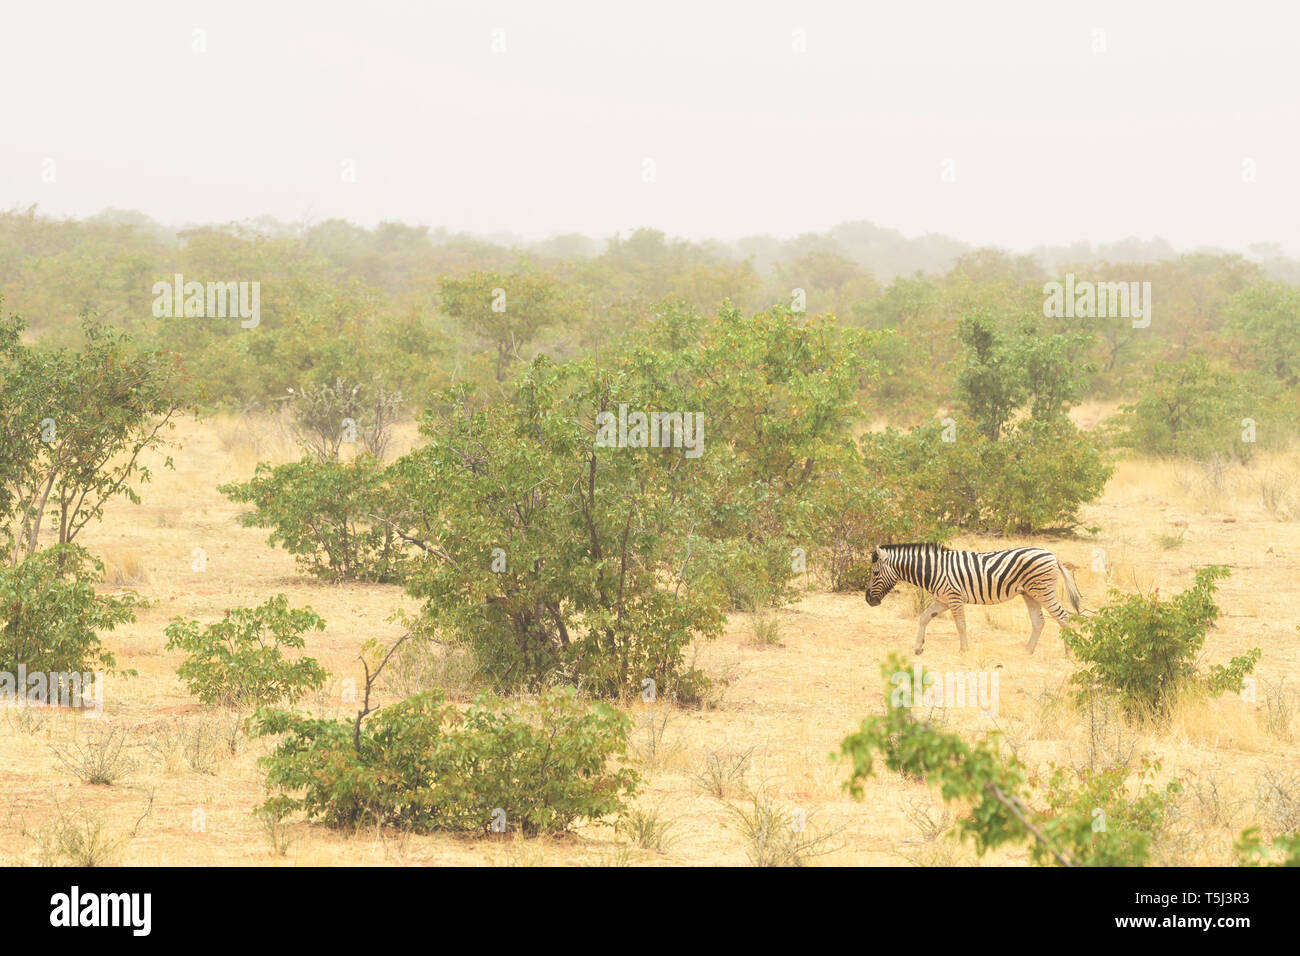 Plains Zebra - Equus quagga, large popular horse like animal from African savannas, Etosha National Park, Namibia Stock Photo